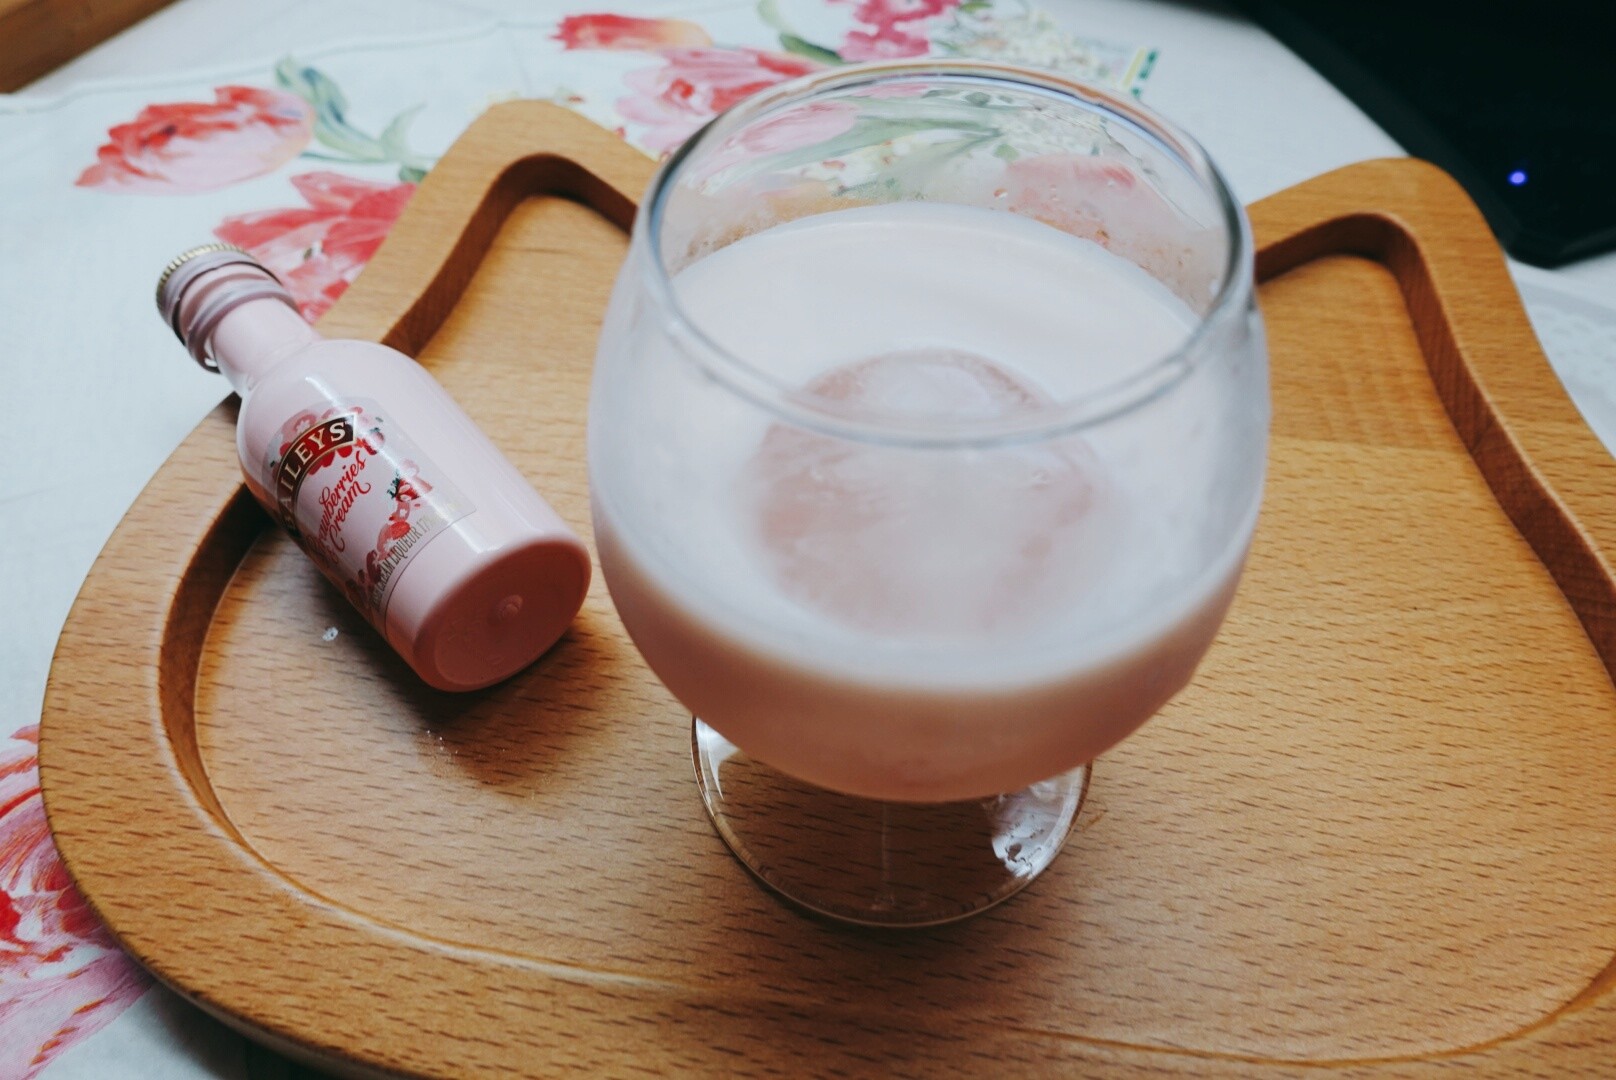 貝禮詩草莓奶酒試喝